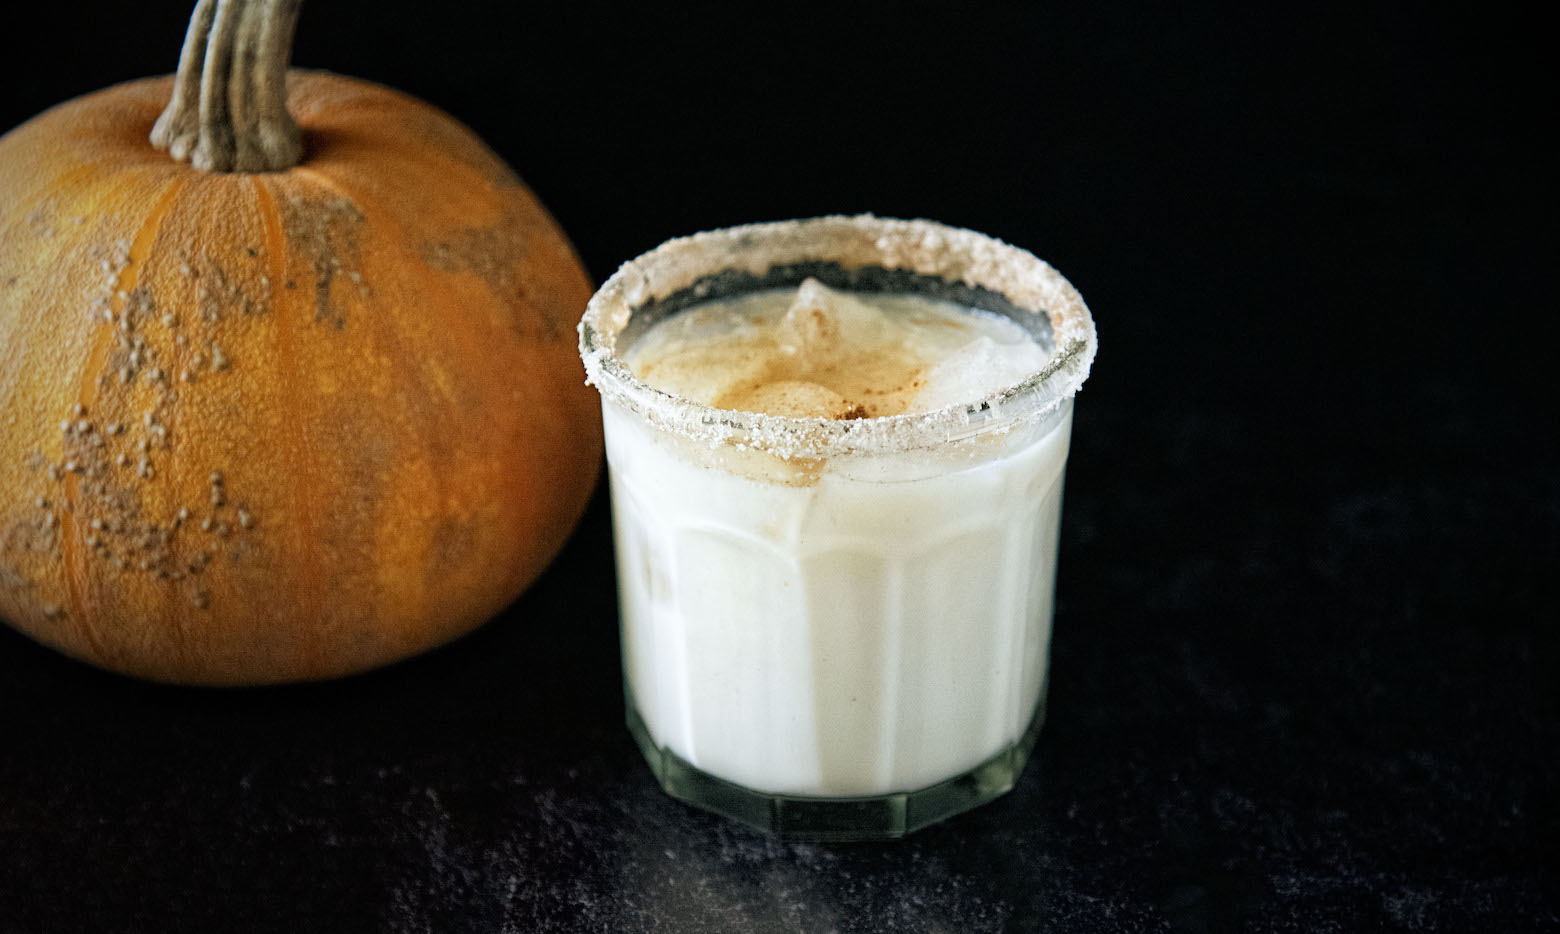 Pumpkin Spice Latte Milk Punch